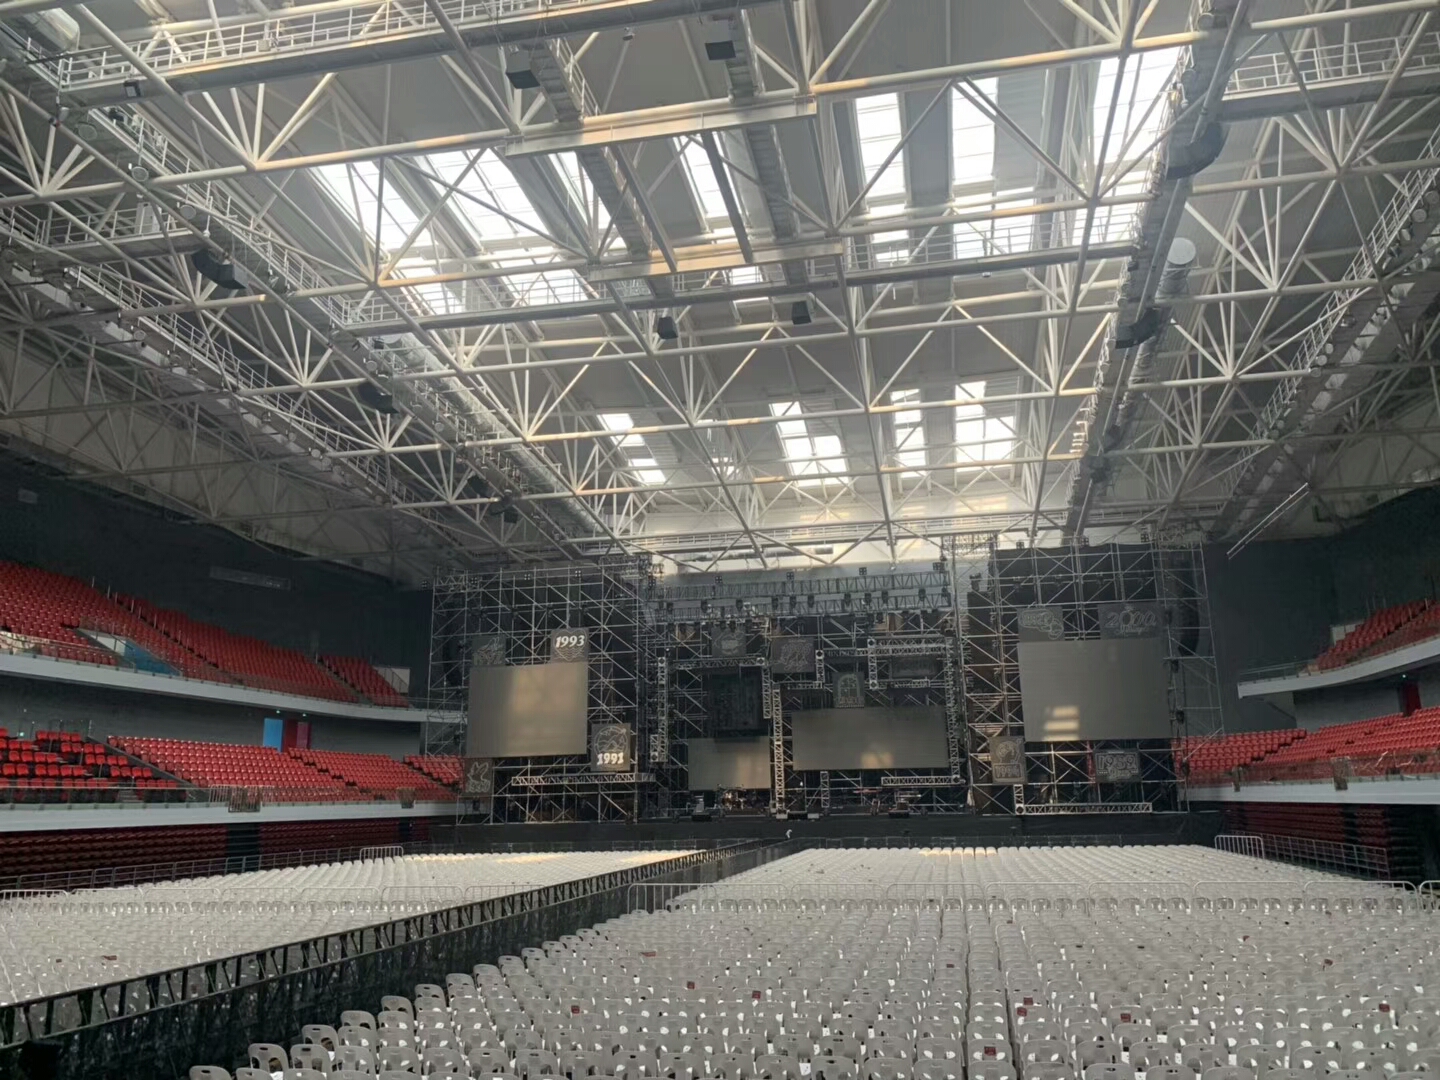 Concert barriers for indoor stadium event